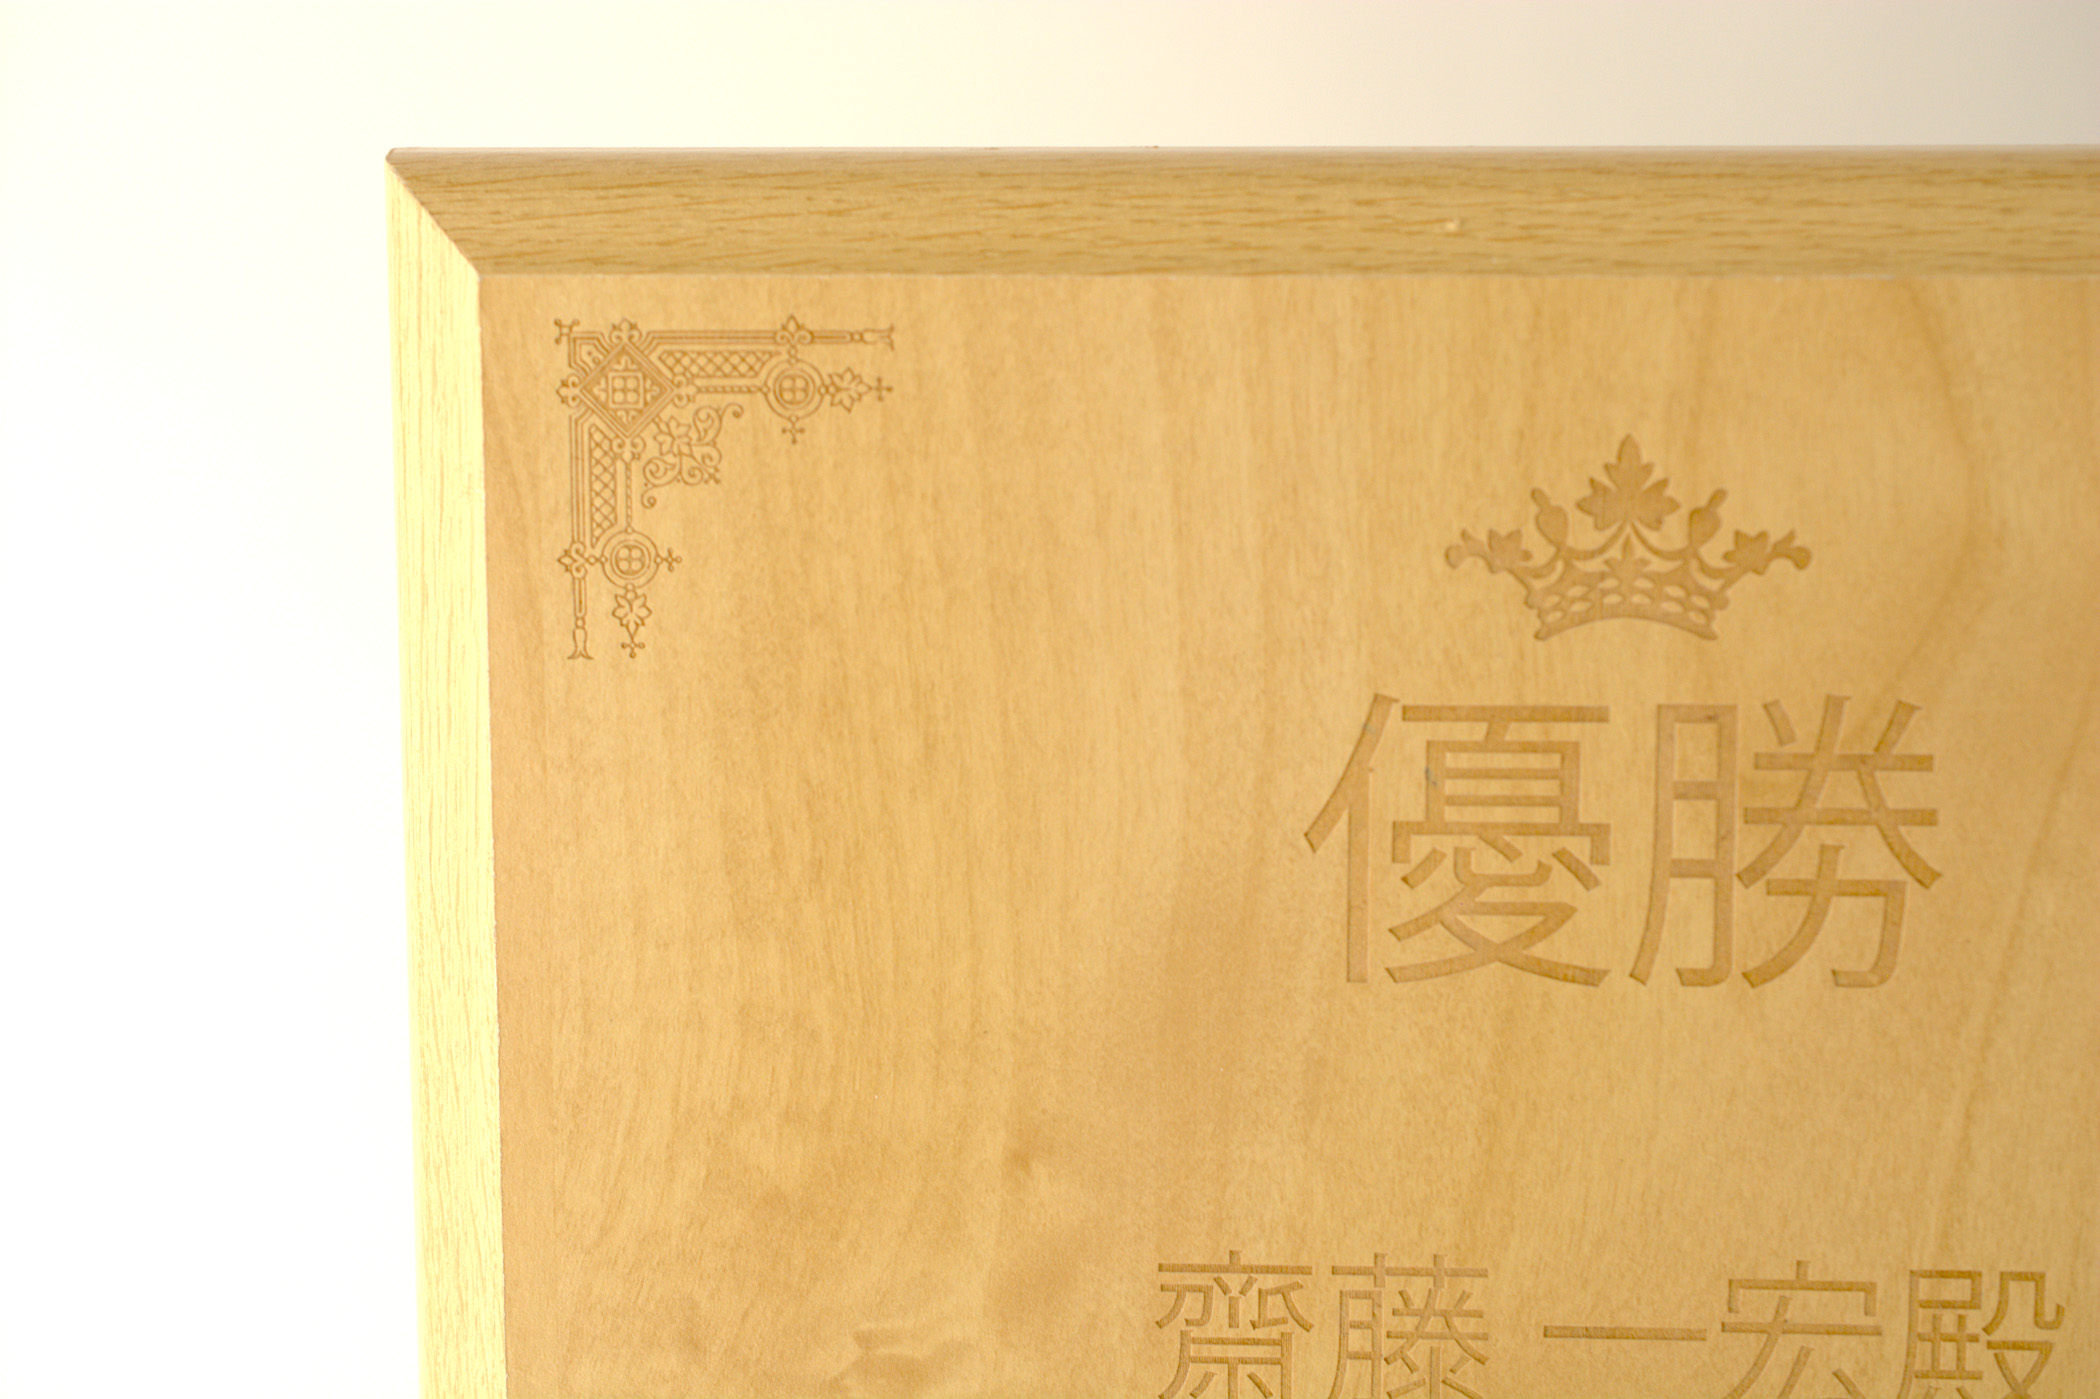 オリジナルボード(木製) Sサイズ (160×210×15)